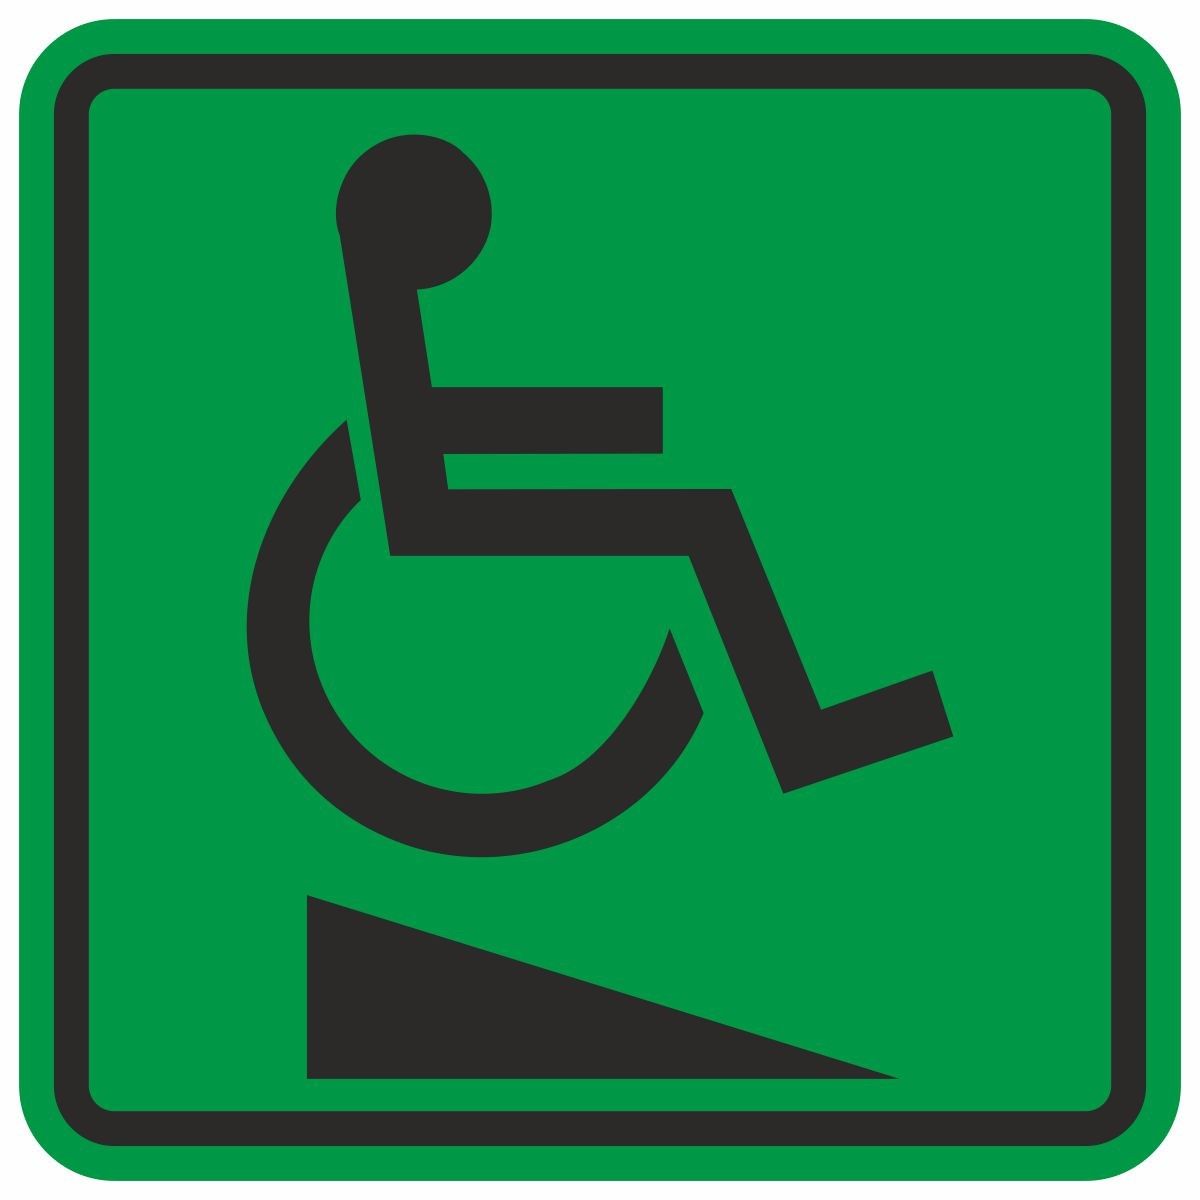 Пиктограмма доступность для инвалидов в креслах колясках